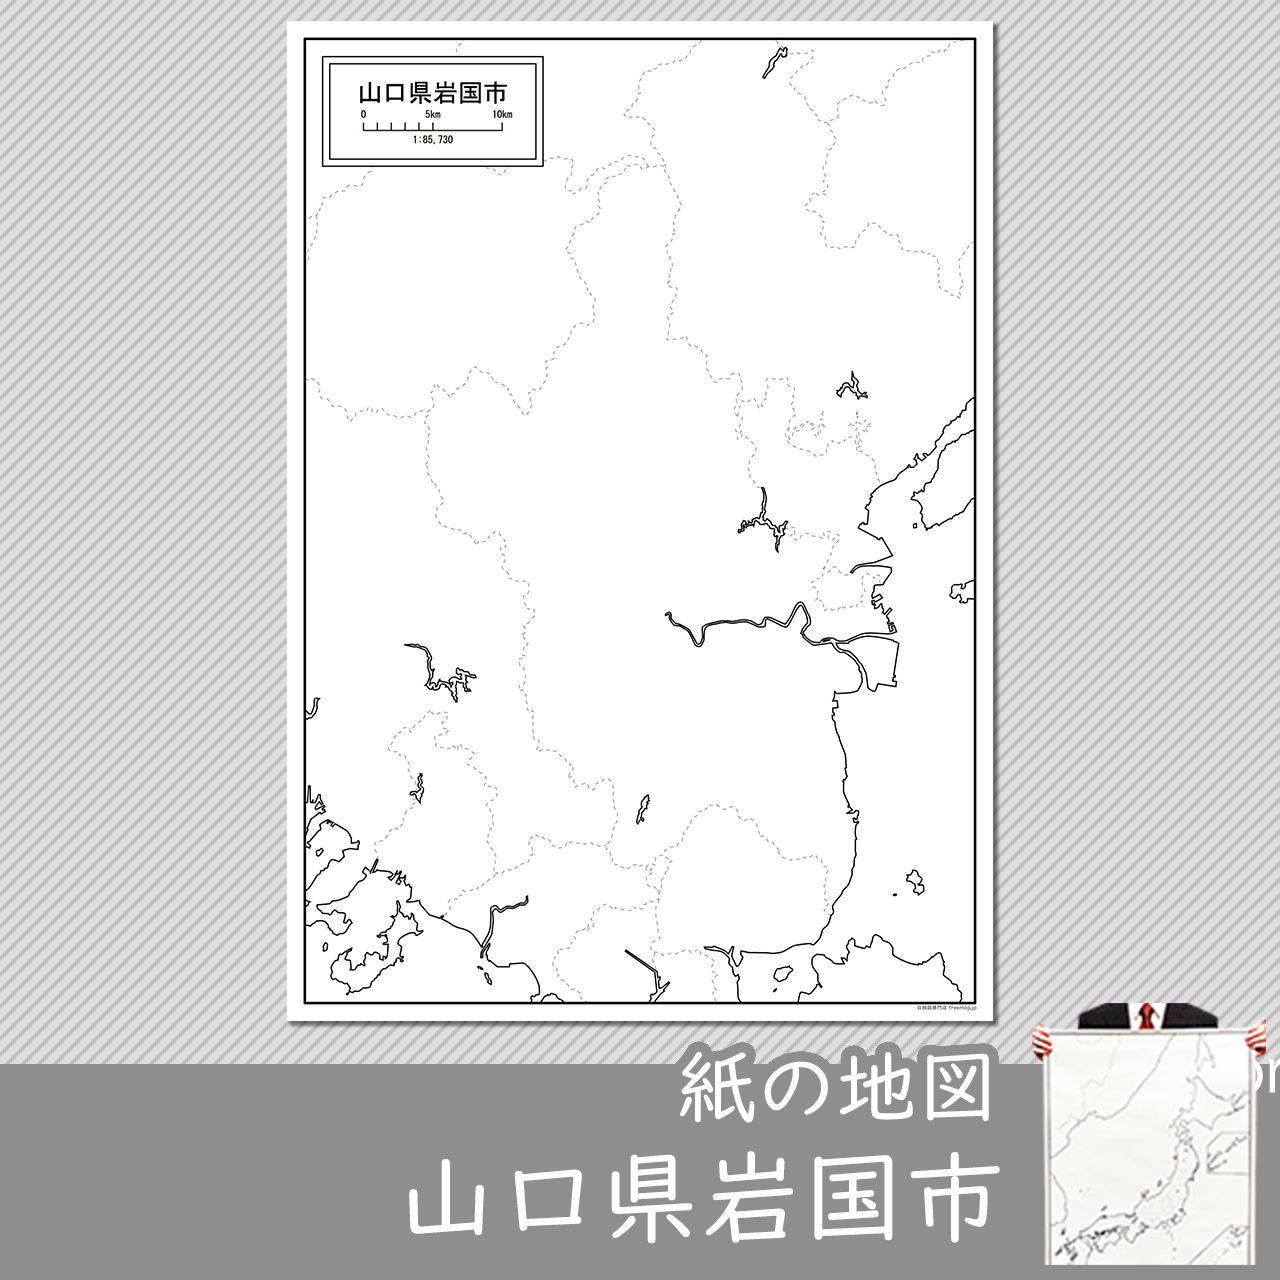 岩国市の紙の白地図のサムネイル